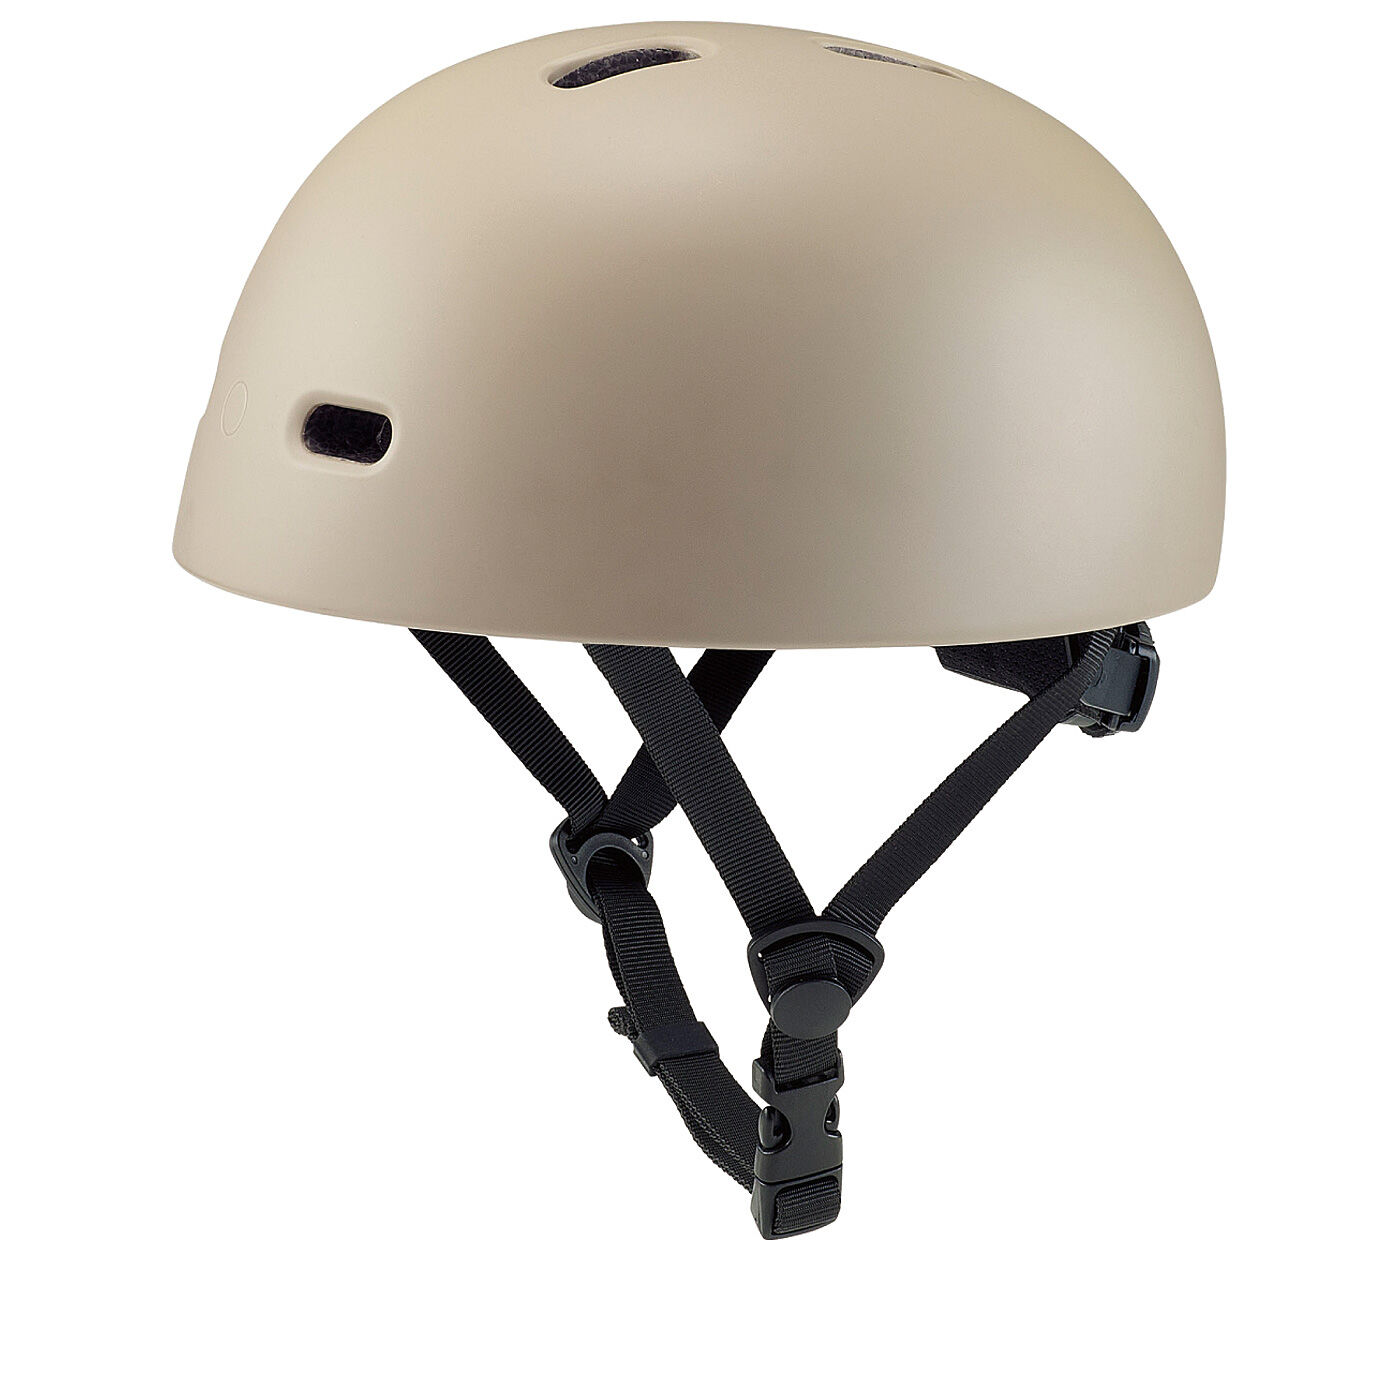 L'AMIPLUS|ラミプリュス　いつものコーデになじんで安全プラス　SG基準のクロシェタイプおしゃヘル〈モカ〉|ヘルメット単体でも使用OK！